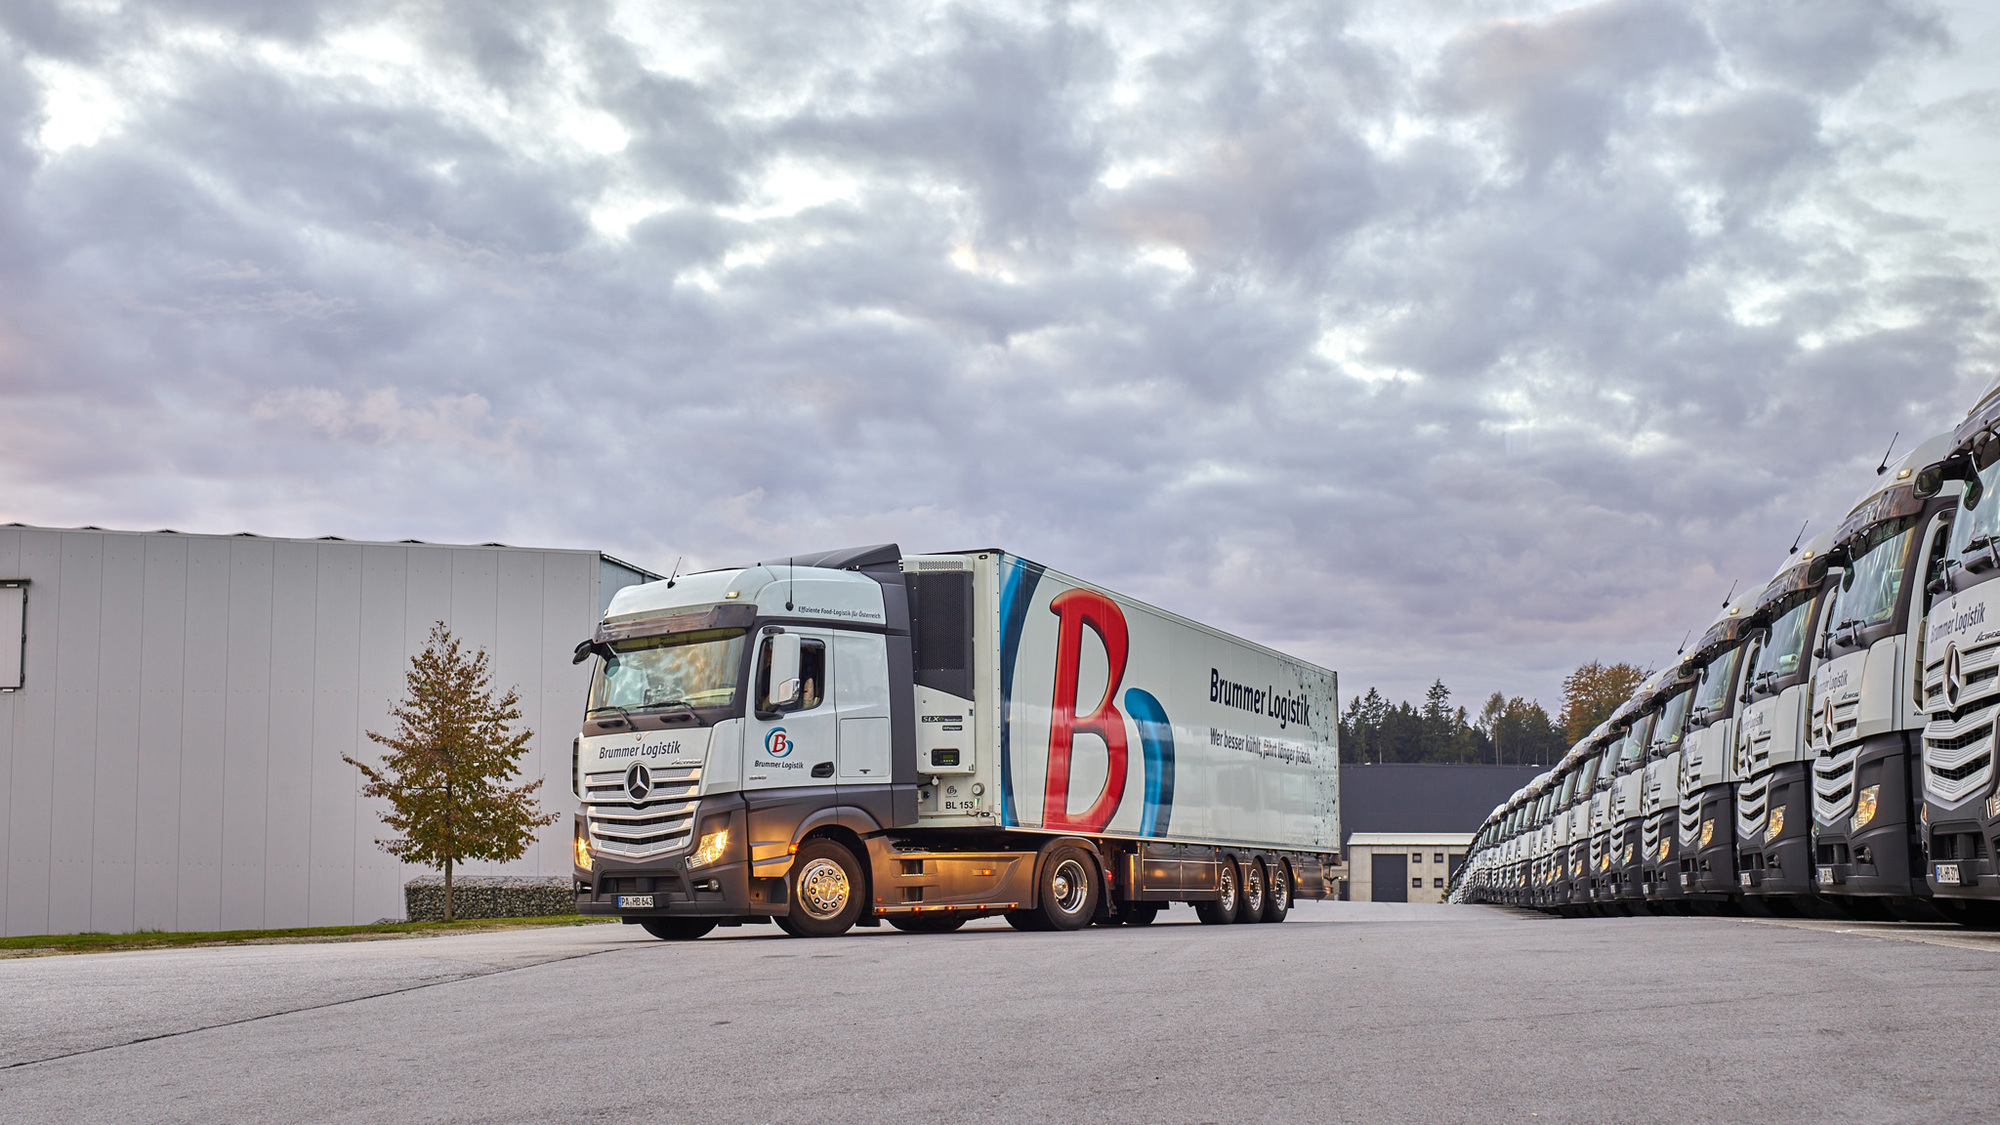 Über die Jahre haben Dachser und Brummer eine vertrauensvolle Zusammenarbeit aufgebaut. Nun übernimmt Dachser die Brummer GmbH.